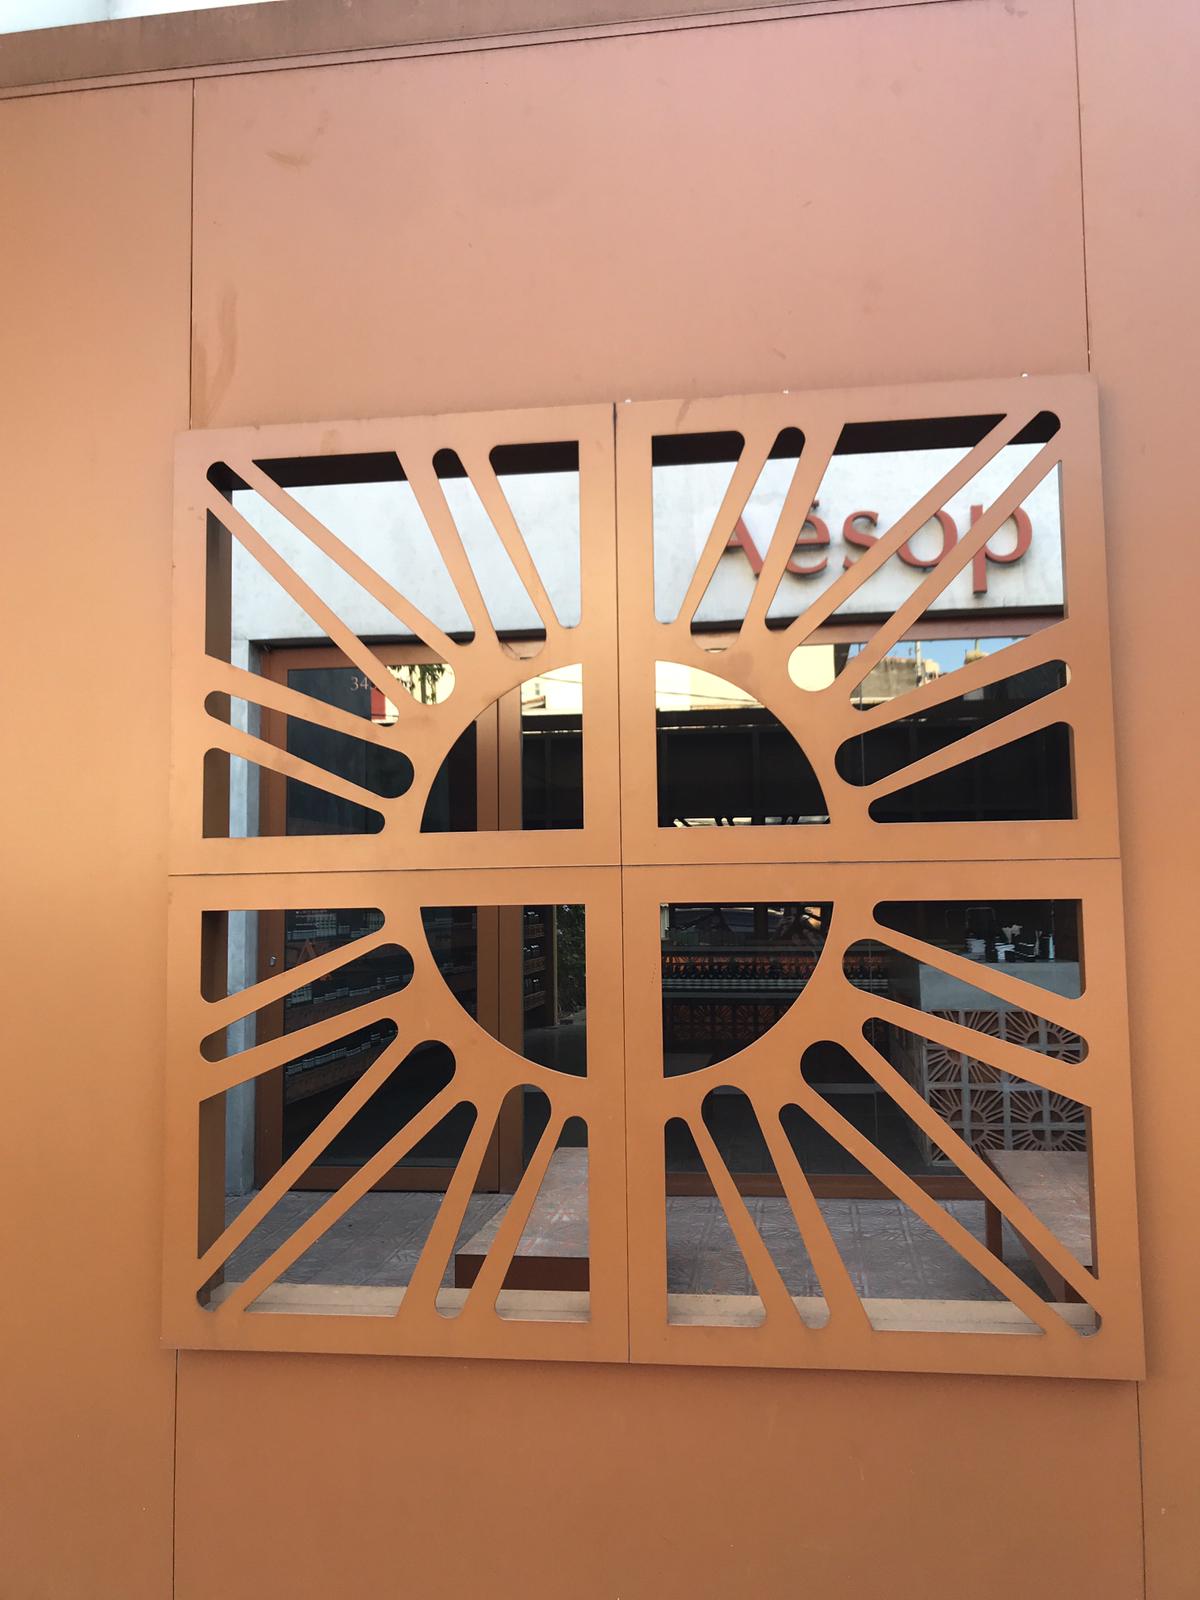 Portão da parte exterior da loja feito em alumínio, pintado do mesmo tom do tijolo e com o símbolo do cobogó no centro dele (Foto: Barbara Cassou)